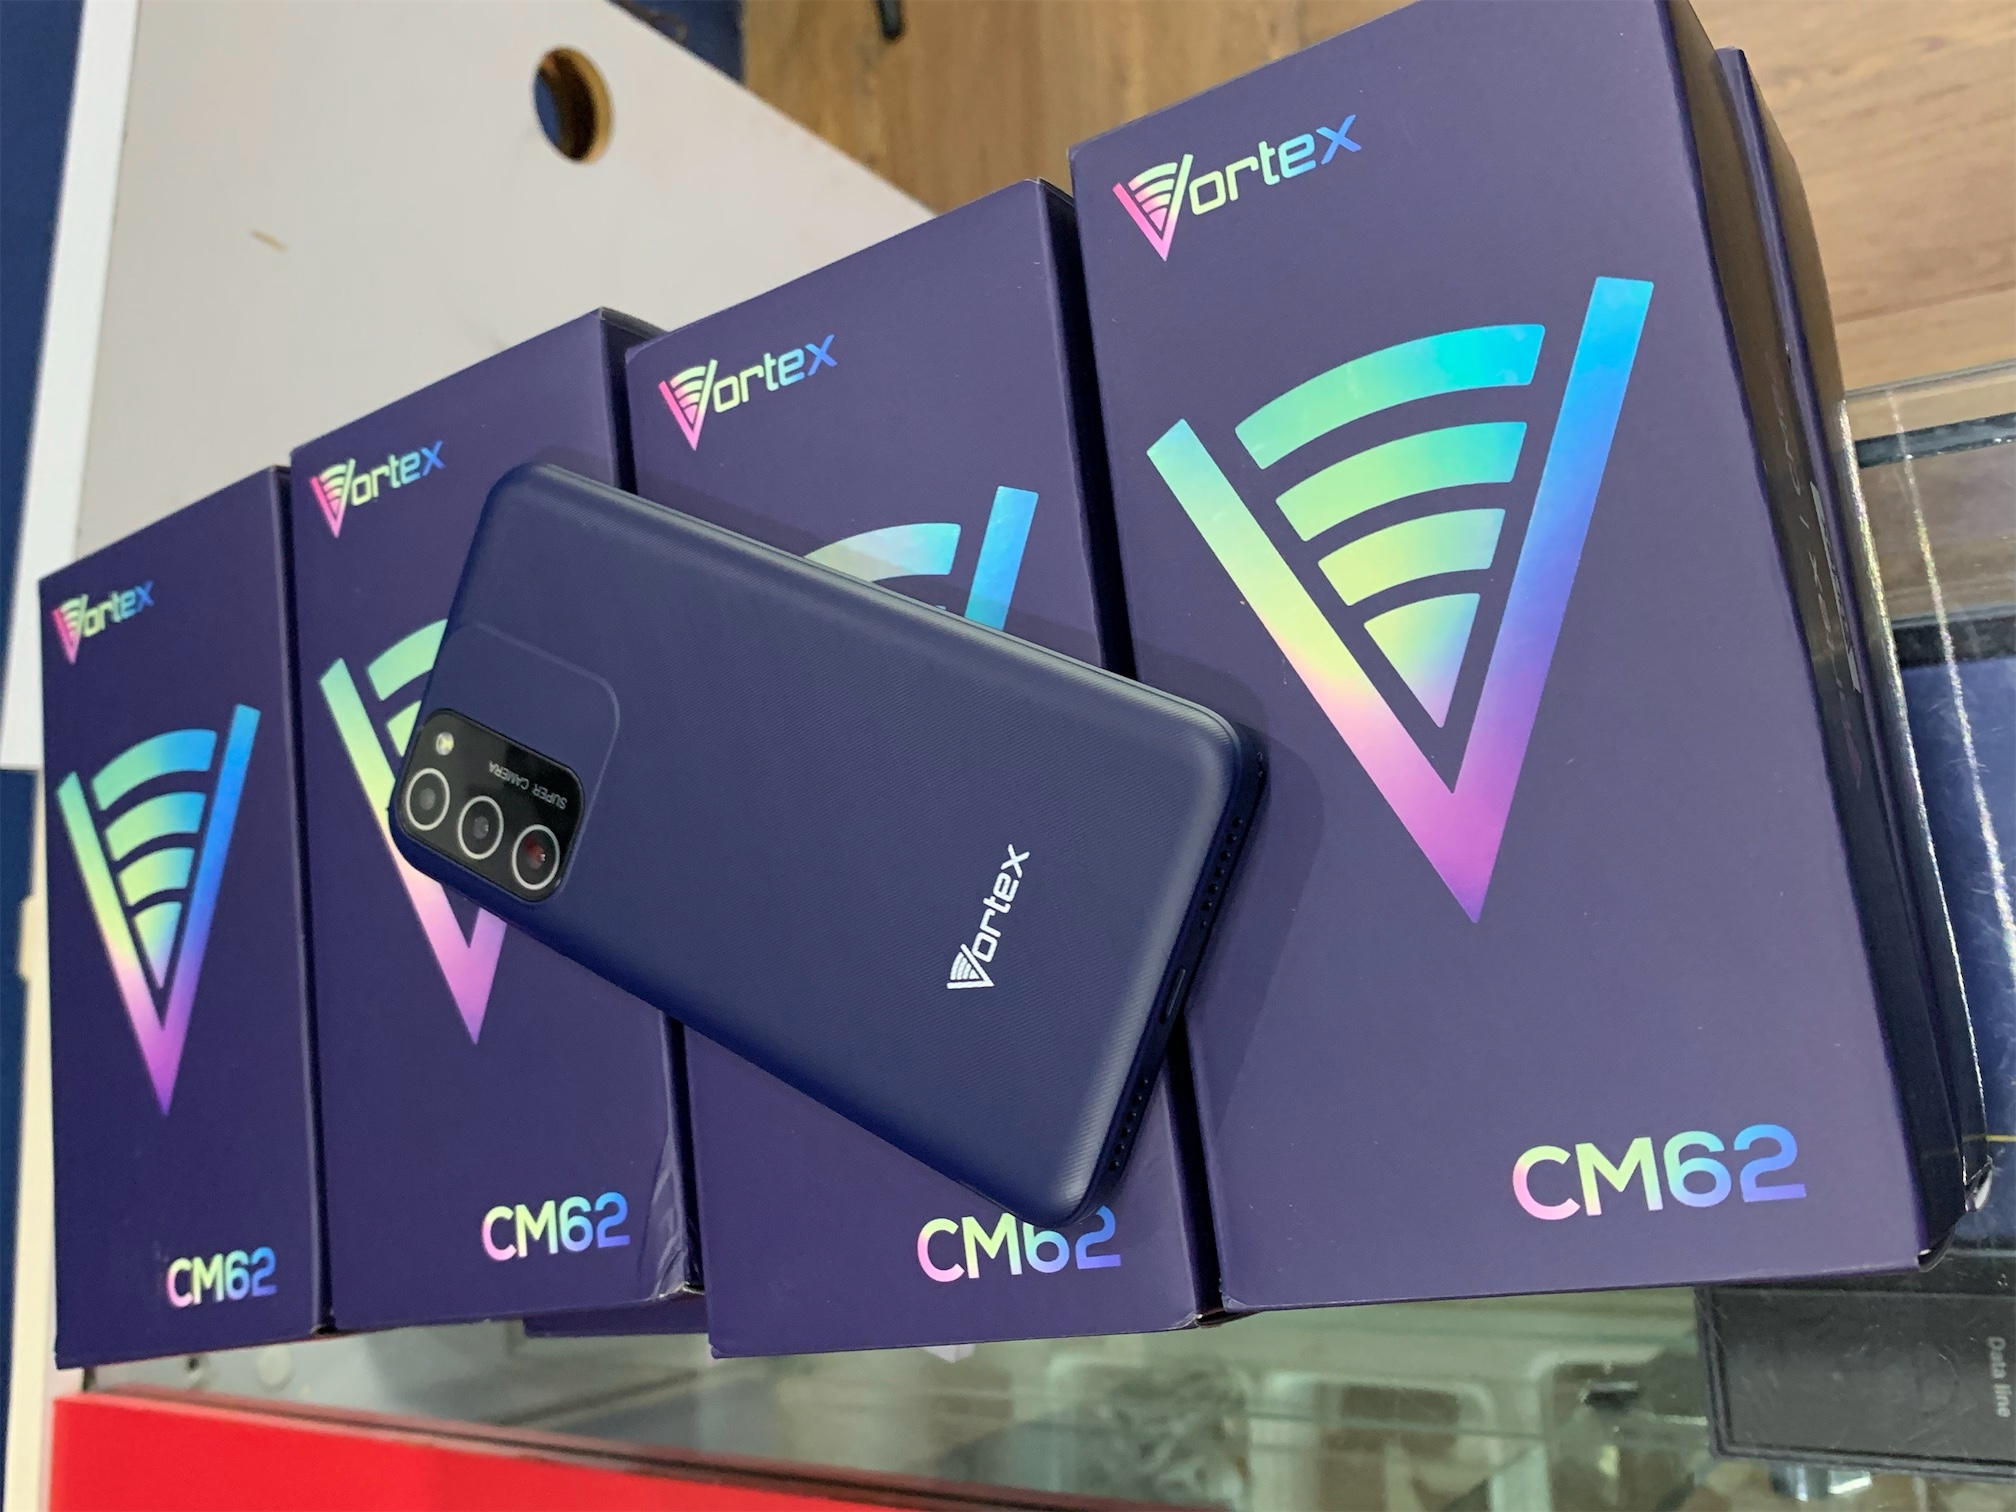 celulares y tabletas - VORTEX CM62